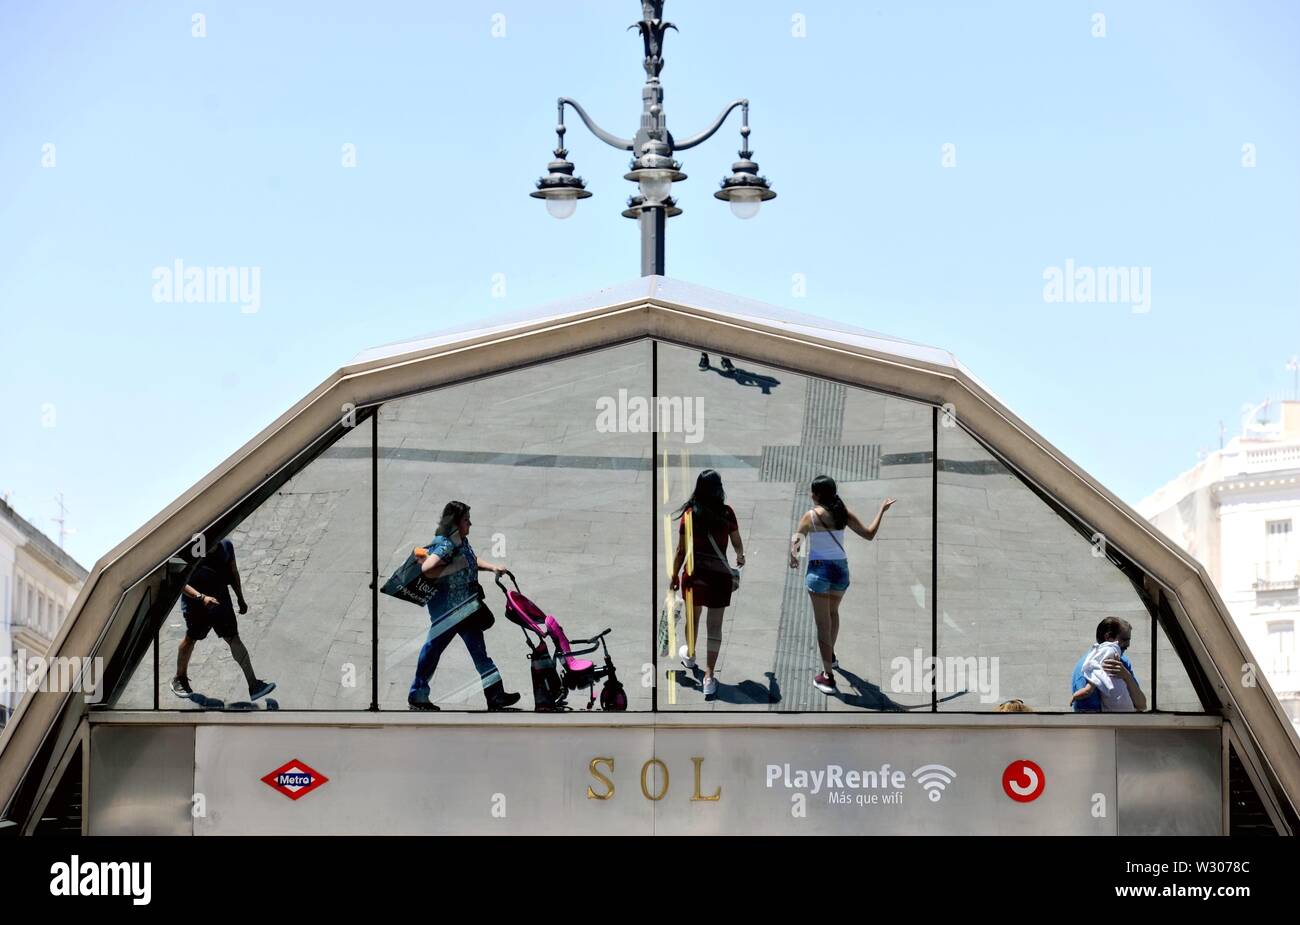 Madrid, Spanien. 11. Juli, 2019. Menschen, vorbei an der Metrostation Sol in Madrid, Spanien, 11. Juli 2019. Madrid sah eine Temperatur von über 35 Grad Celsius in den letzten Tagen. Quelle: Guo Qiuda/Xinhua/Alamy leben Nachrichten Stockfoto